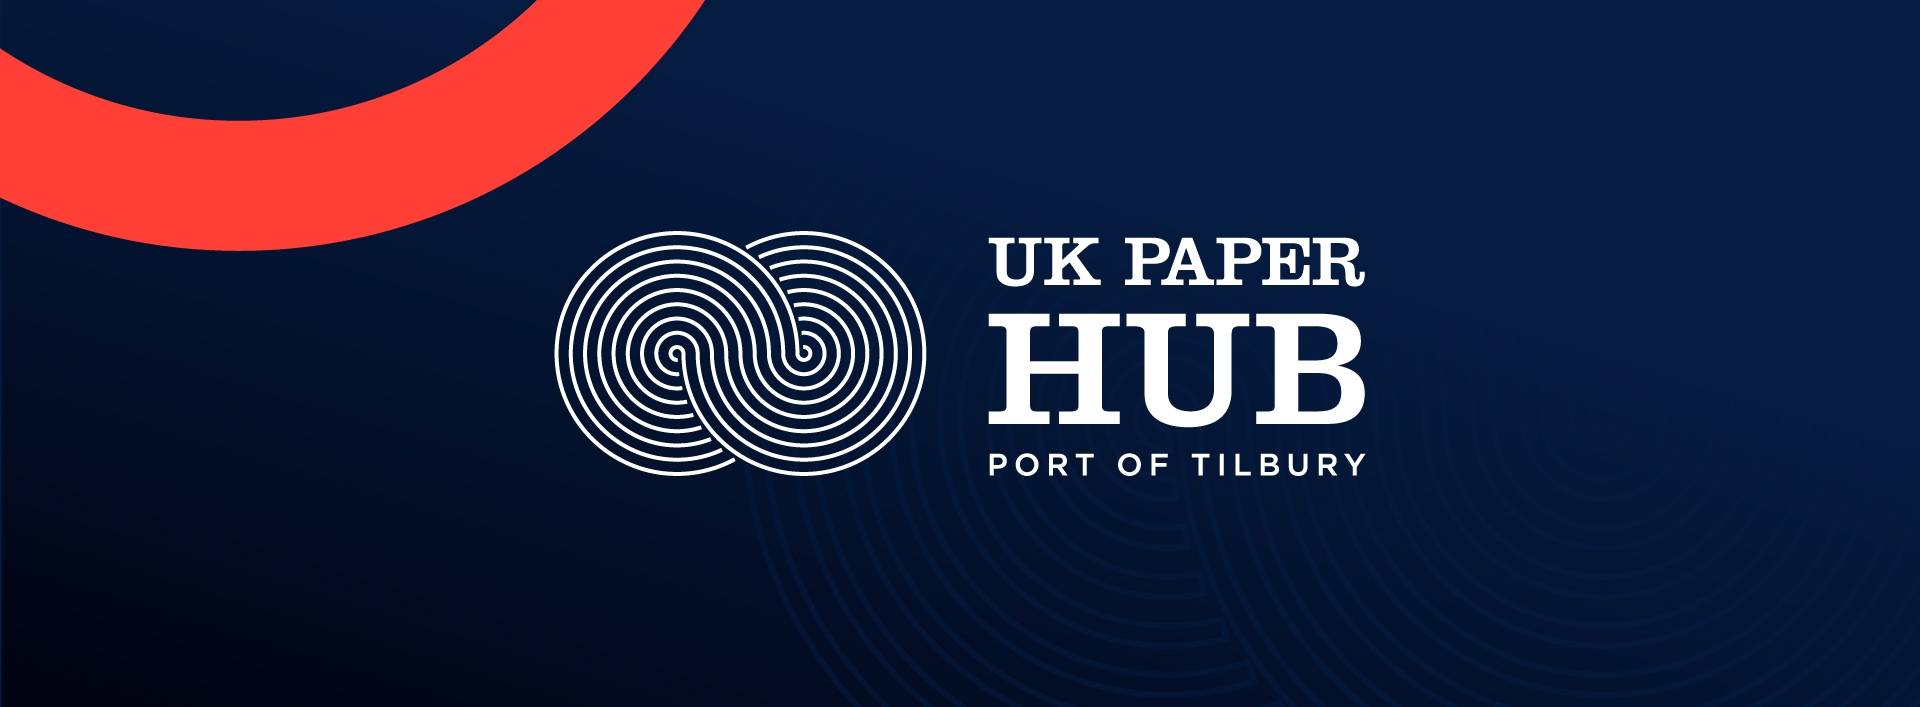 UK Paper hub on a stylised background